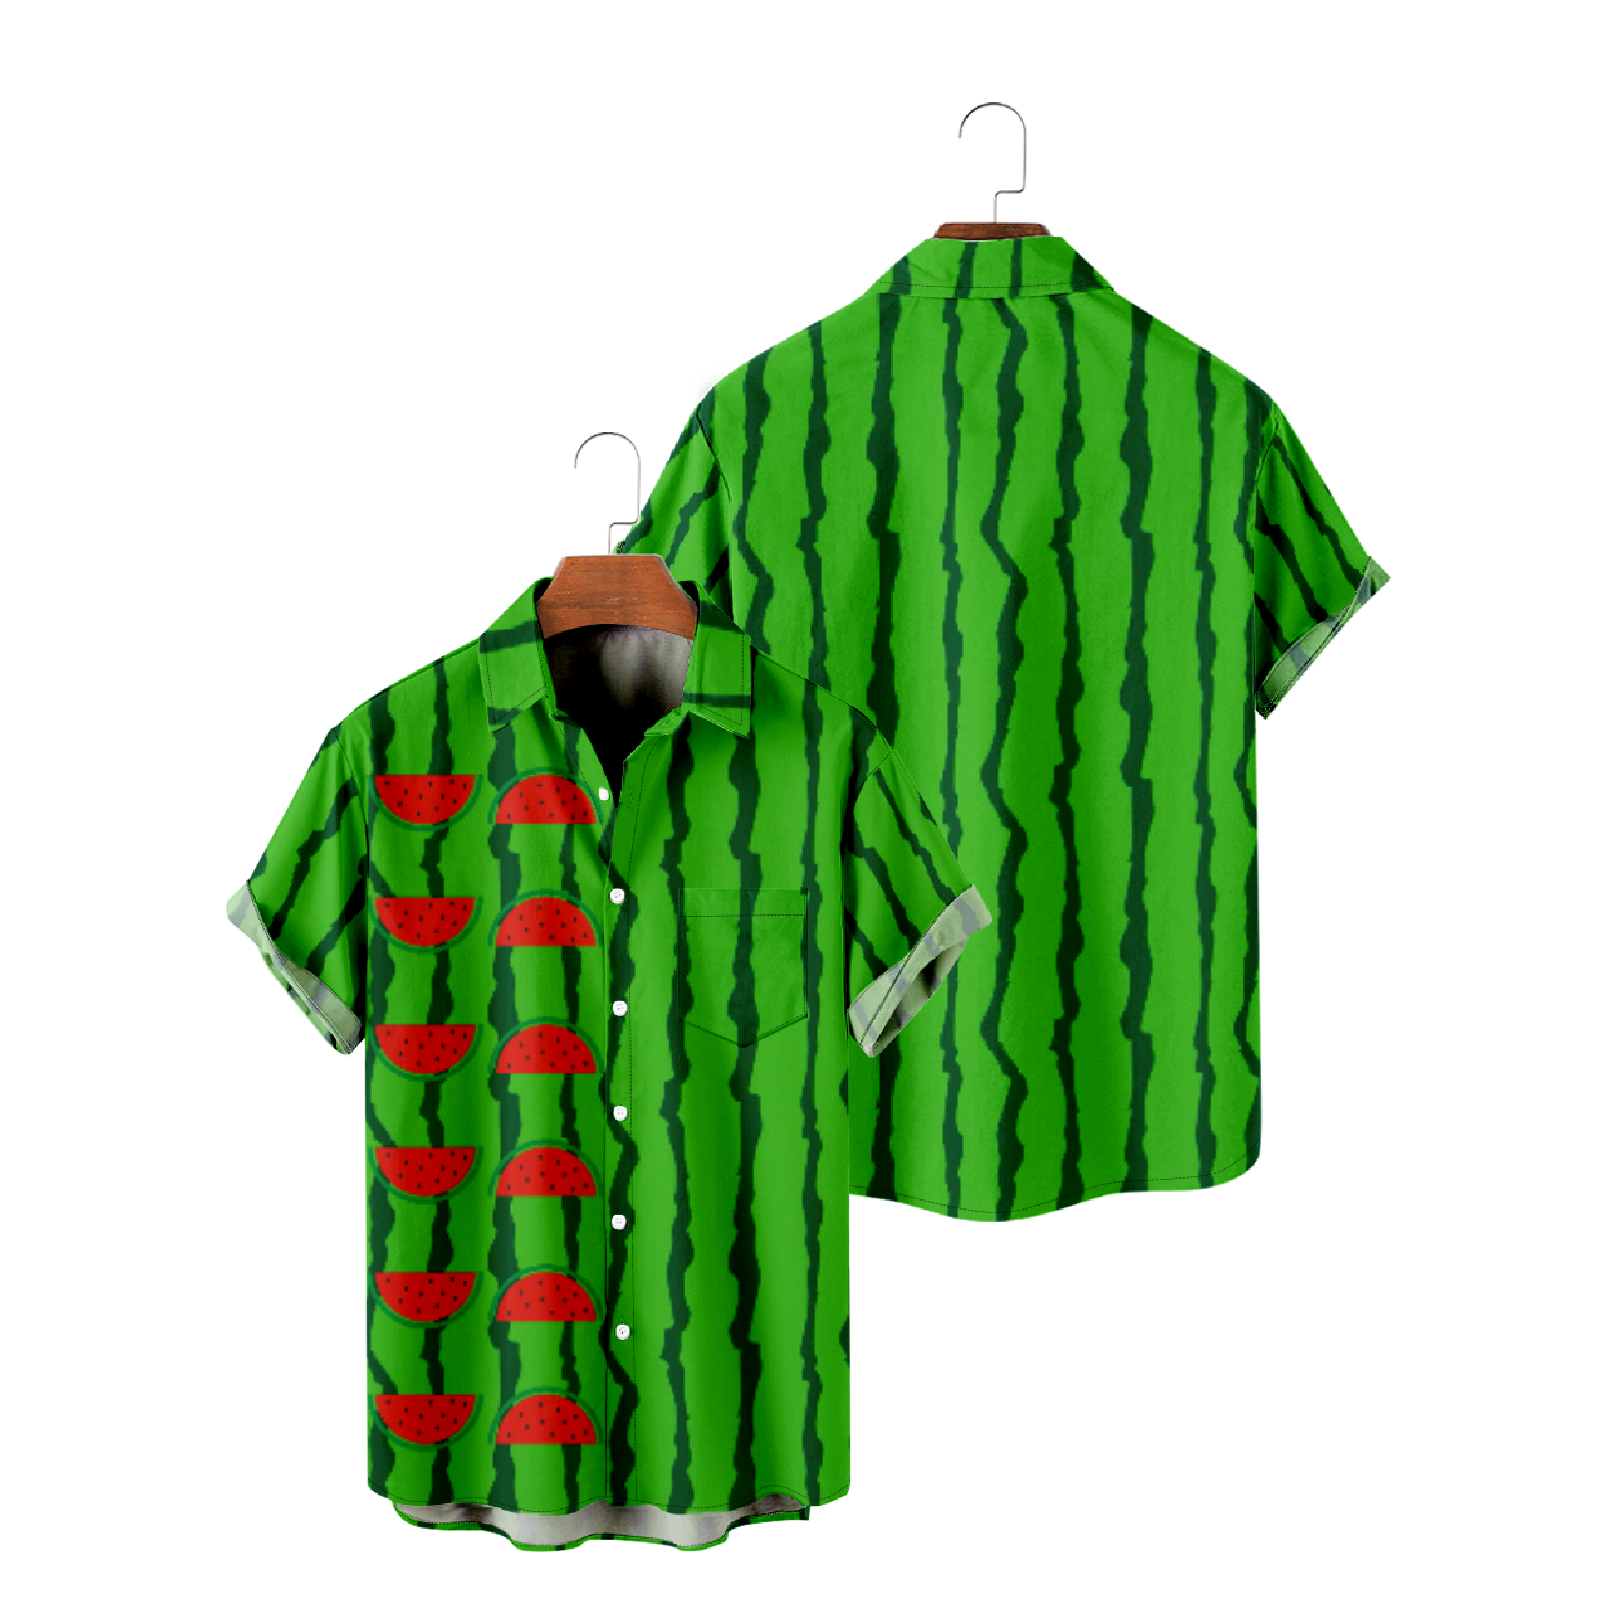 Green Striped Watermelon Button Up Shirt with Pockets Hawaiian Tropical Fruit Summer Short Sleeve Shirt